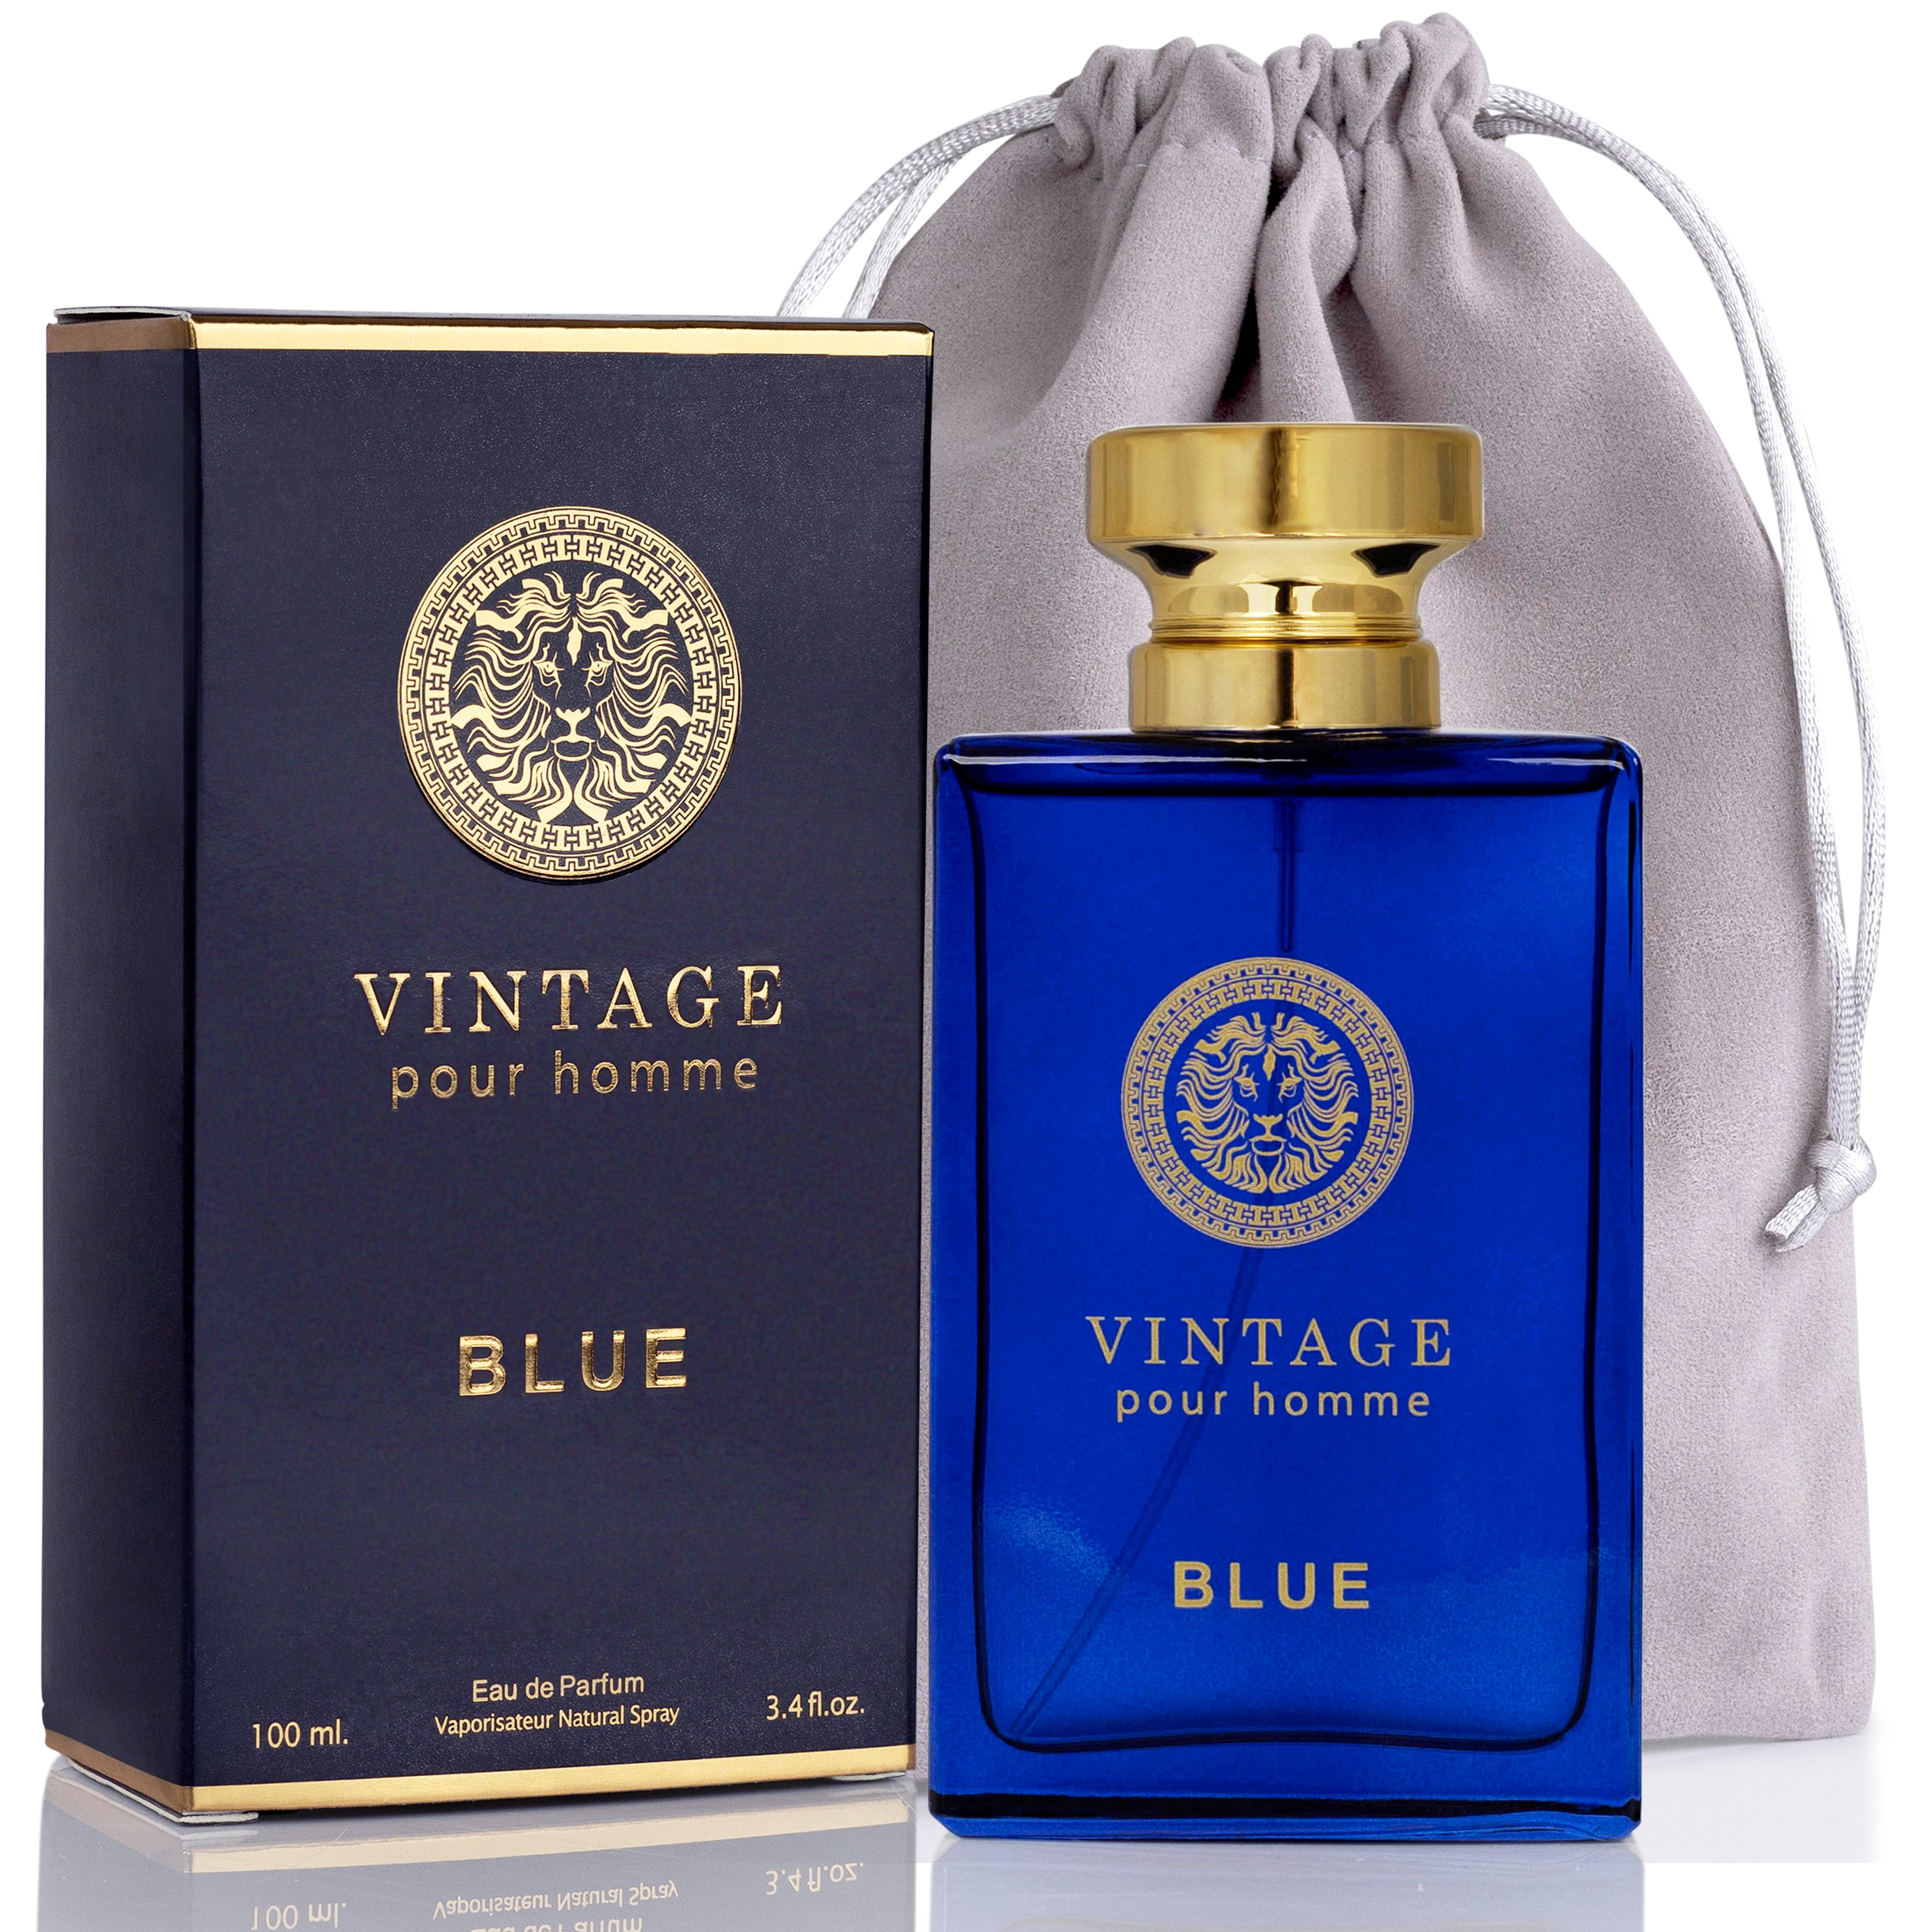 Vintage Blue Perfume, 3.4 fl.oz. Eau de Parfum Spray for Men, Perfect Gift by SE